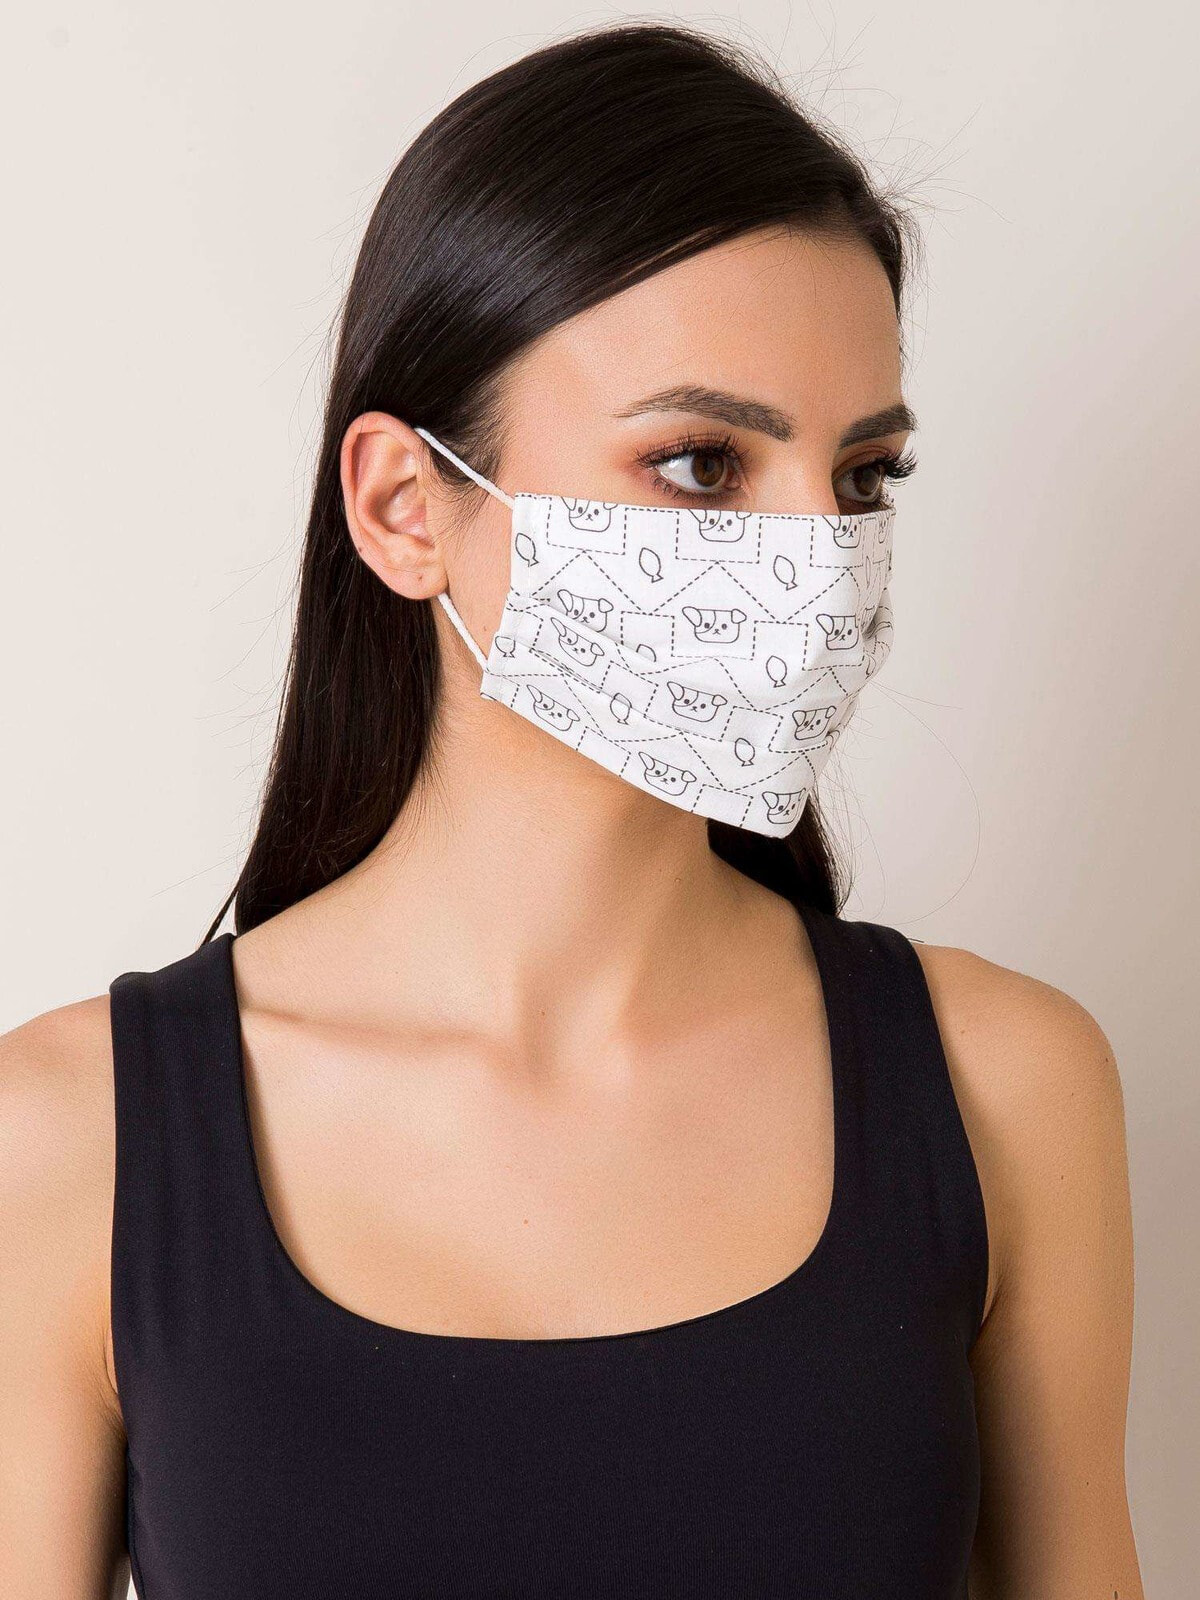 Защитная маска-KW-MO-JK104-бело-черный маски V38096997Цвет: Черно-белый  купить по выгодной цене в интернет-магазине market.litemf.com с доставкой